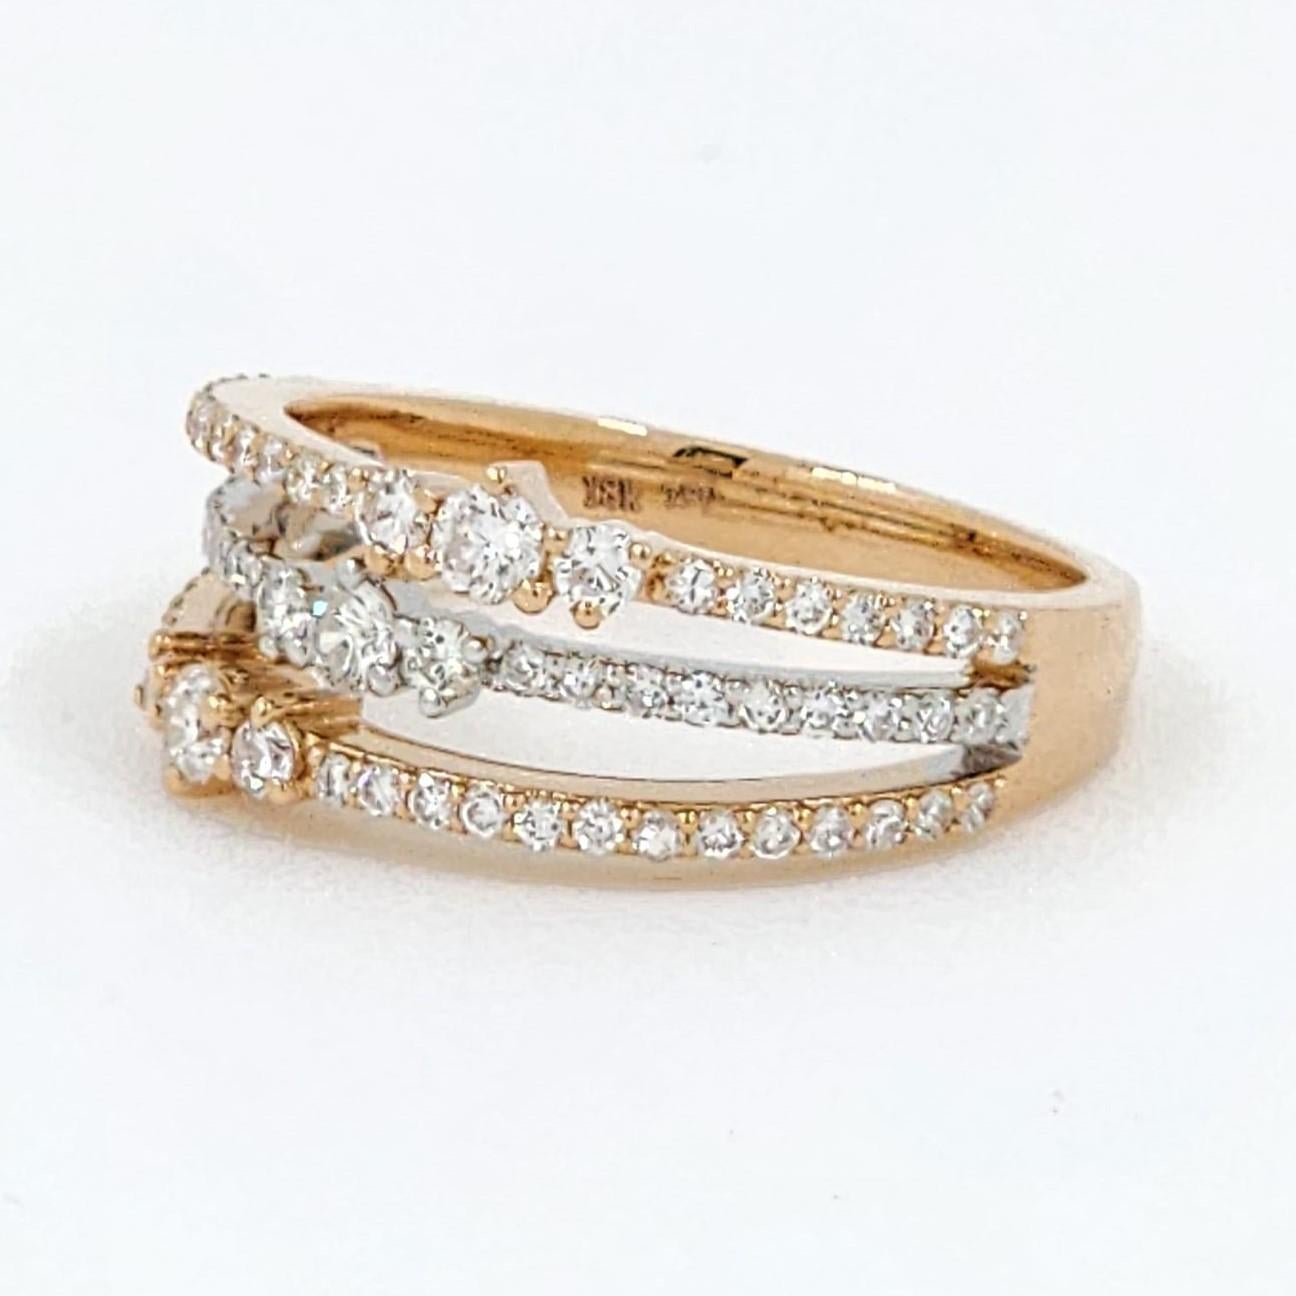 Modern 0.66 Carat Diamond Band Ring in 18 Karat Rose and White Gold